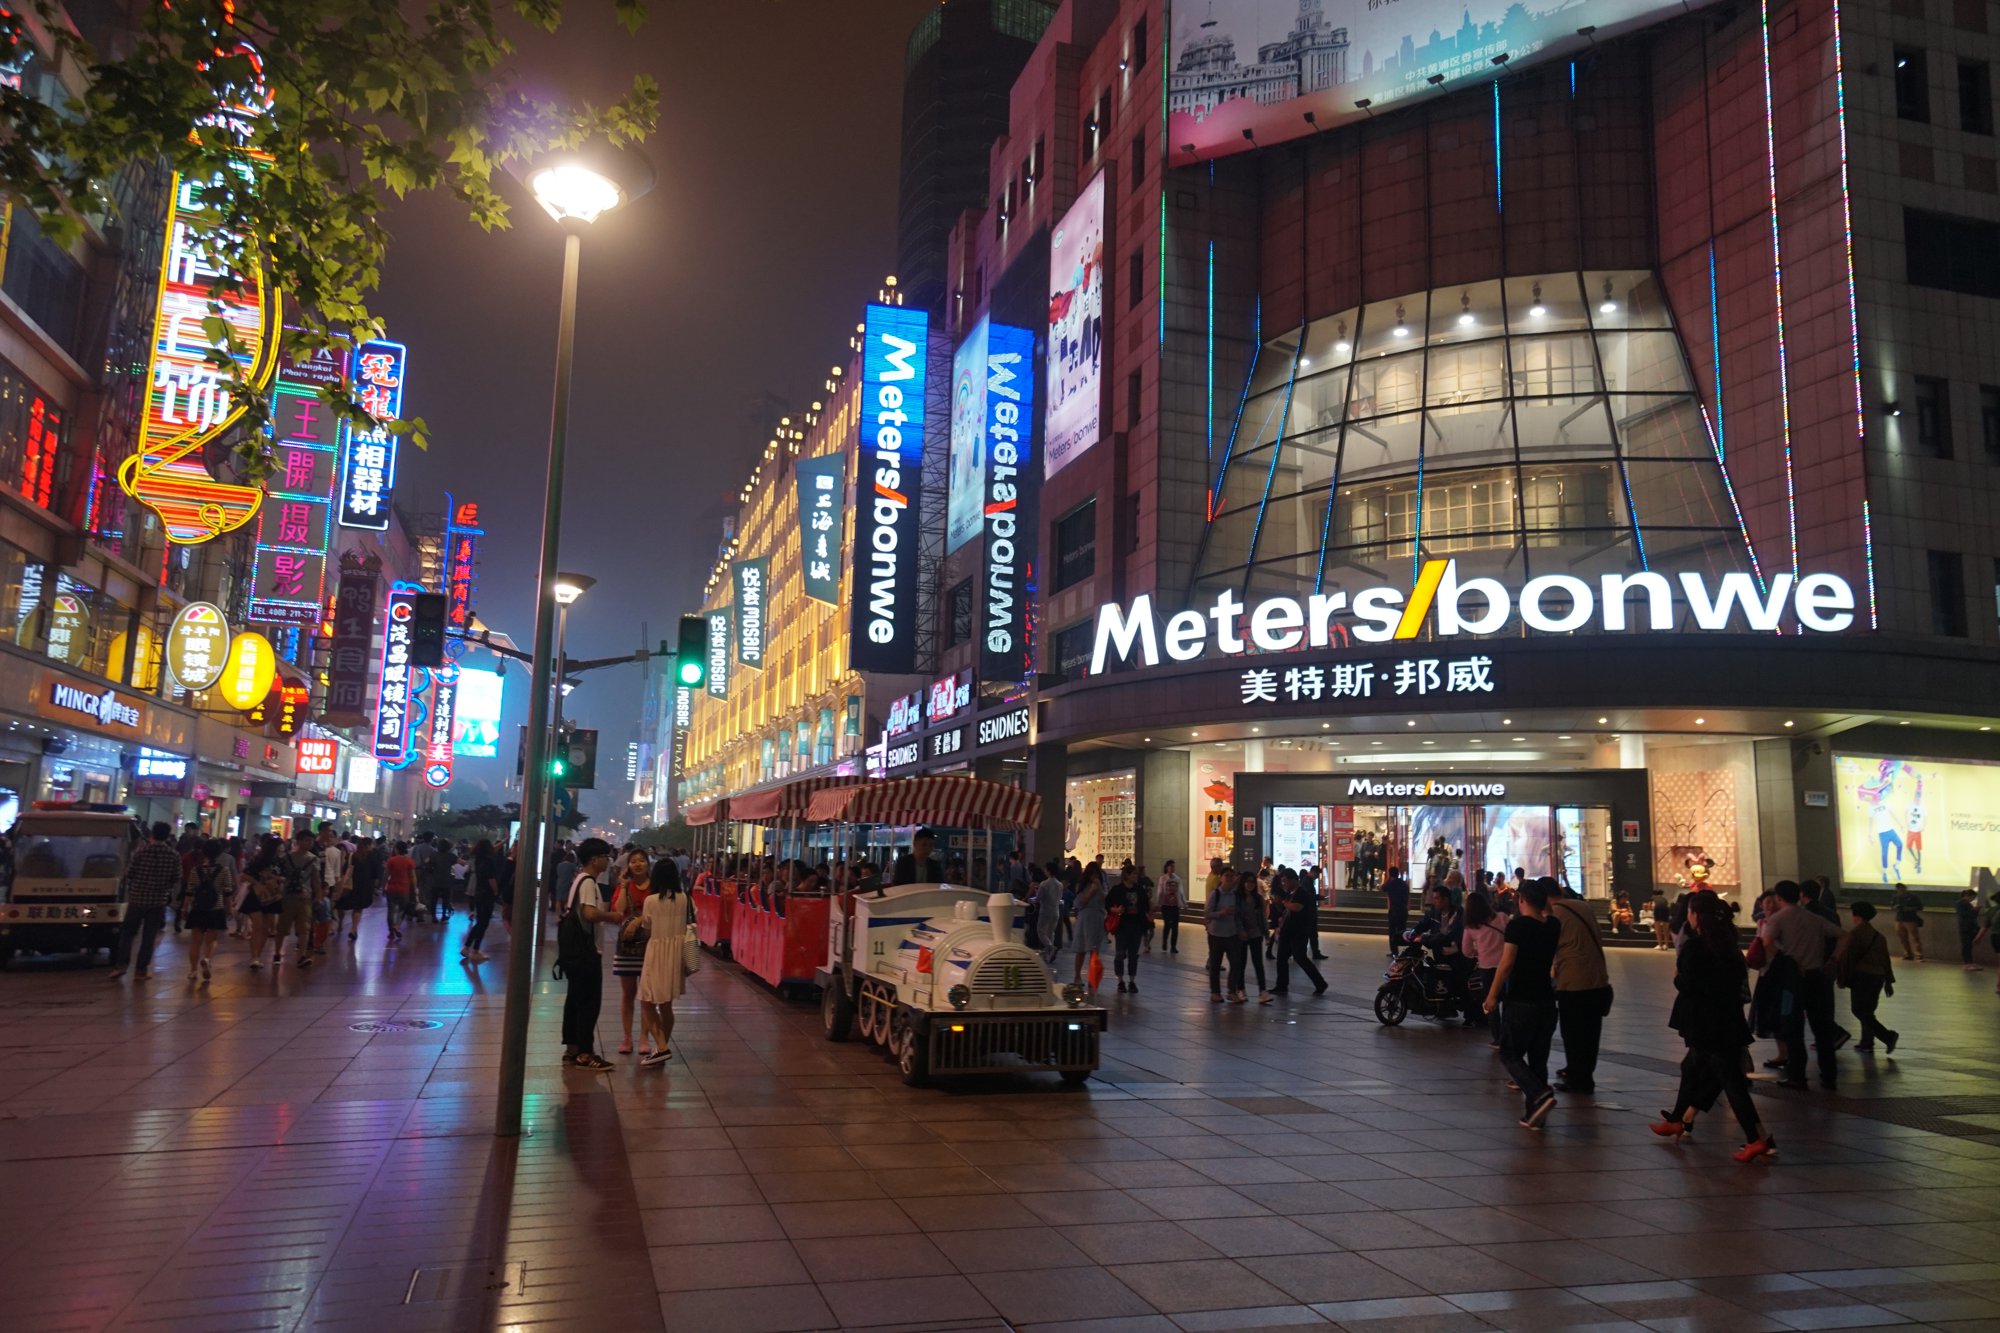 上海・南京歩行街 (Meters bonwe)